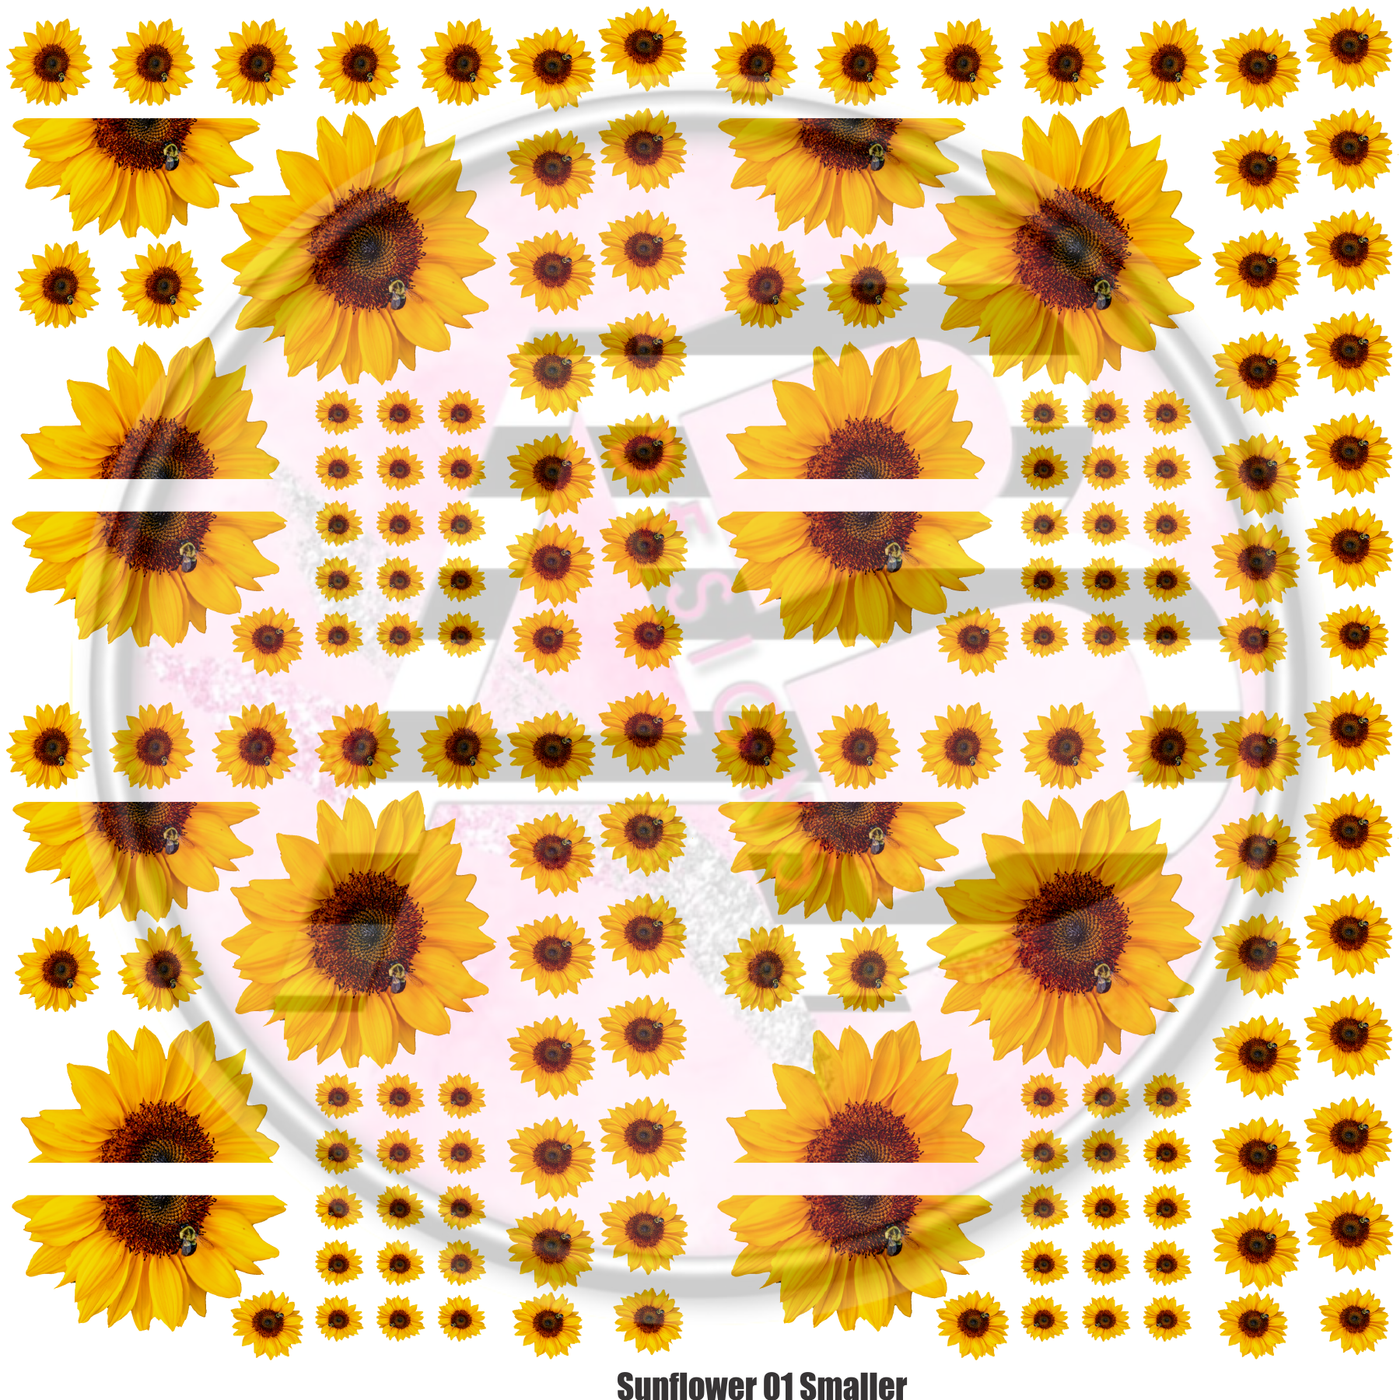 Sunflower 01 Smaller Full Sheet 12x12 Clear Cast Decal